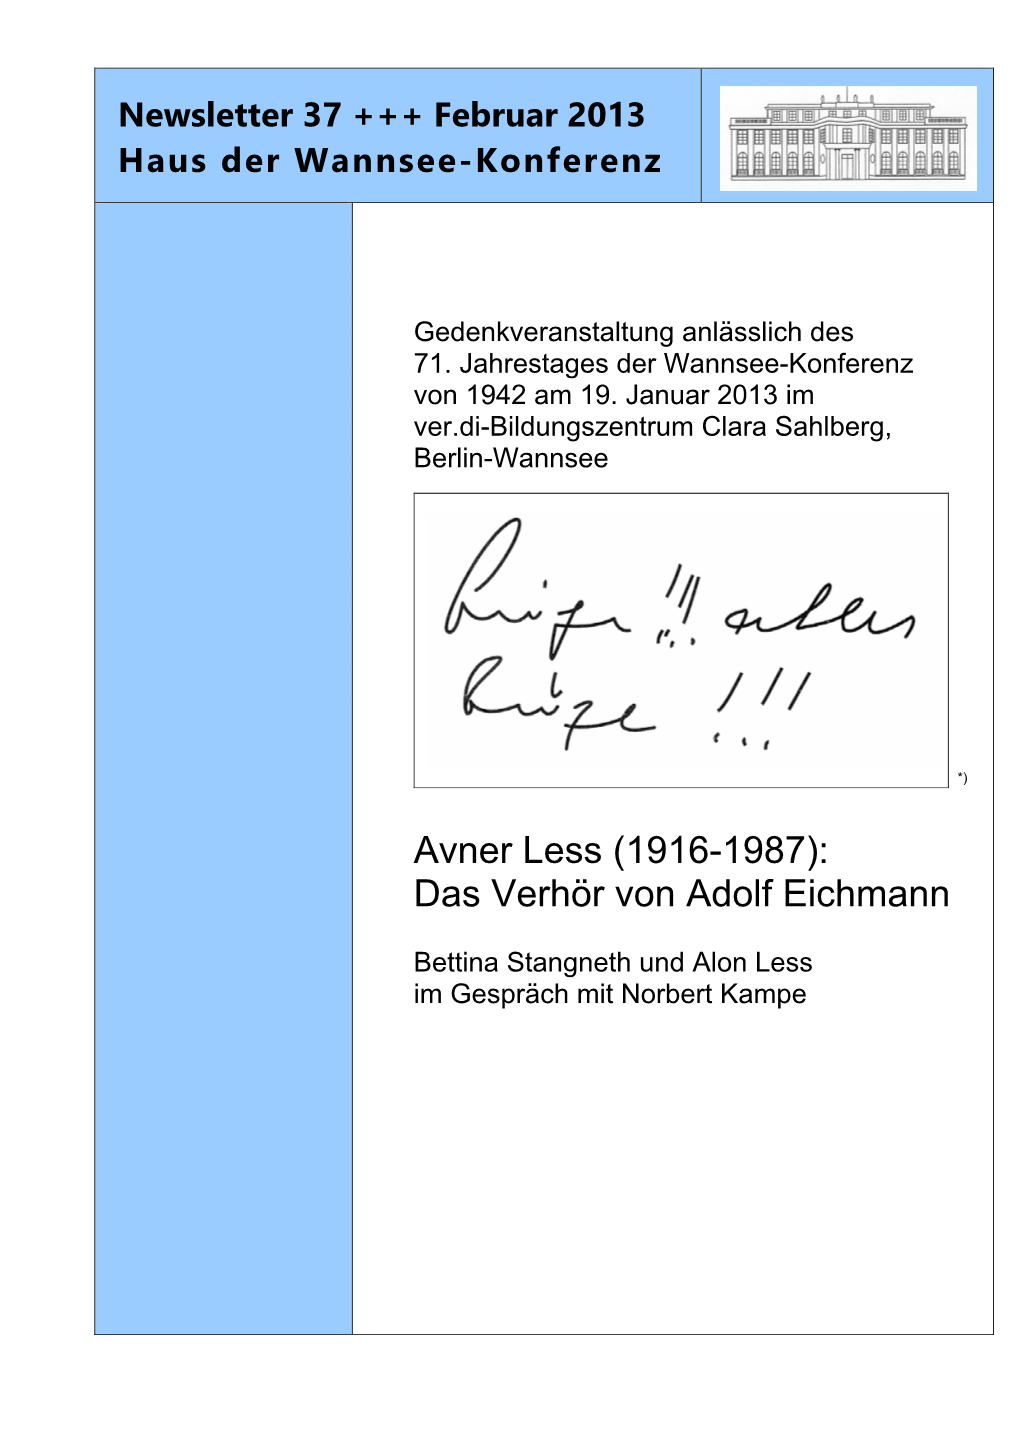 Avner Less (1916-1987): Das Verhör Von Adolf Eichmann